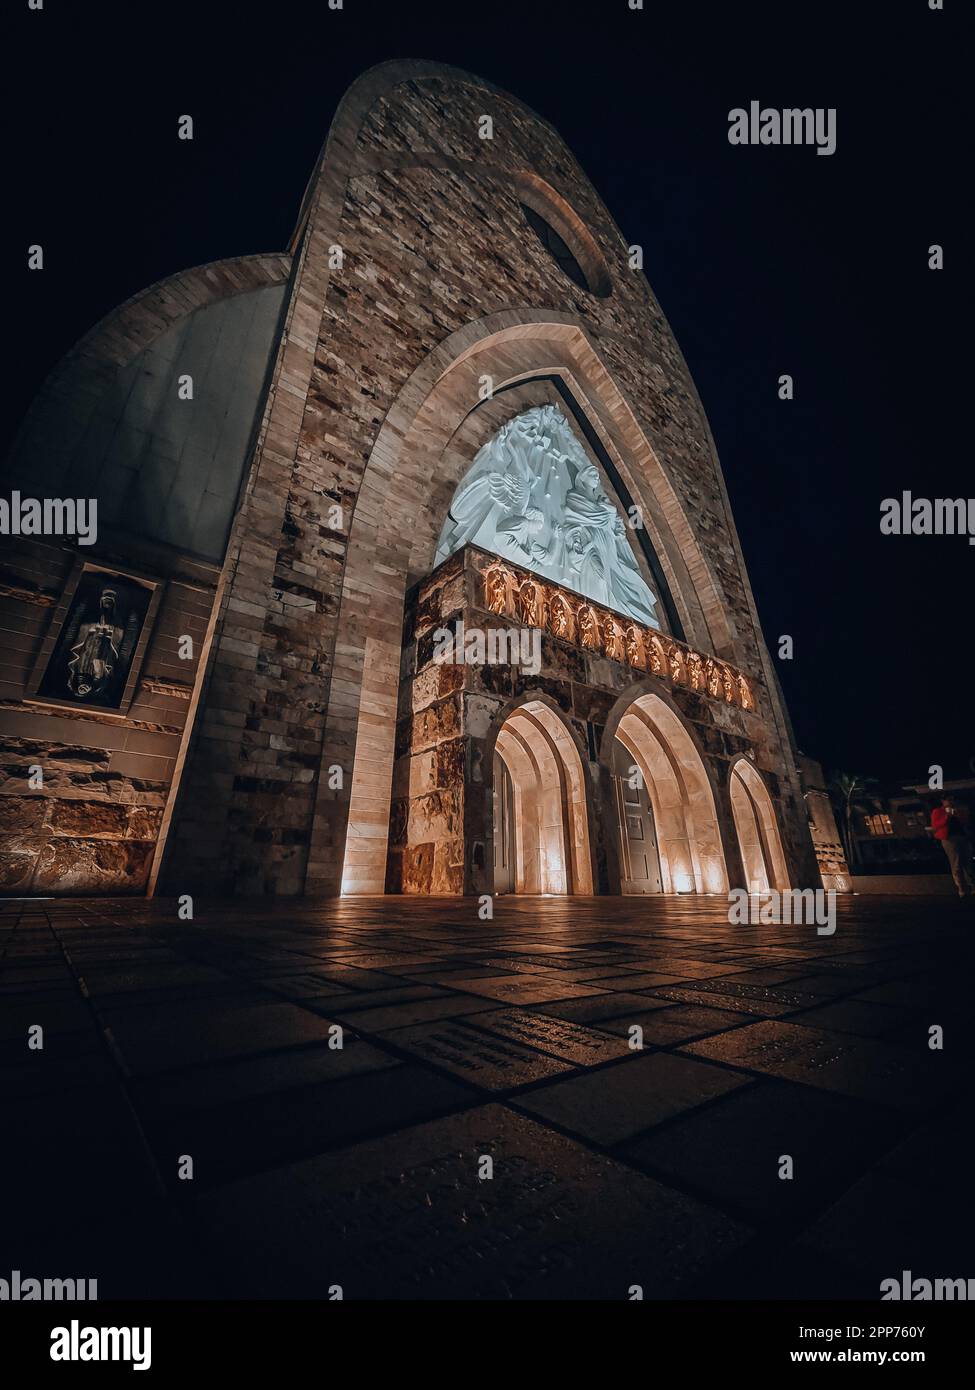 Una chiesa tradizionale in pietra si erge sullo sfondo di un cielo notturno scuro, illuminato da un'unica fonte di luce Foto Stock